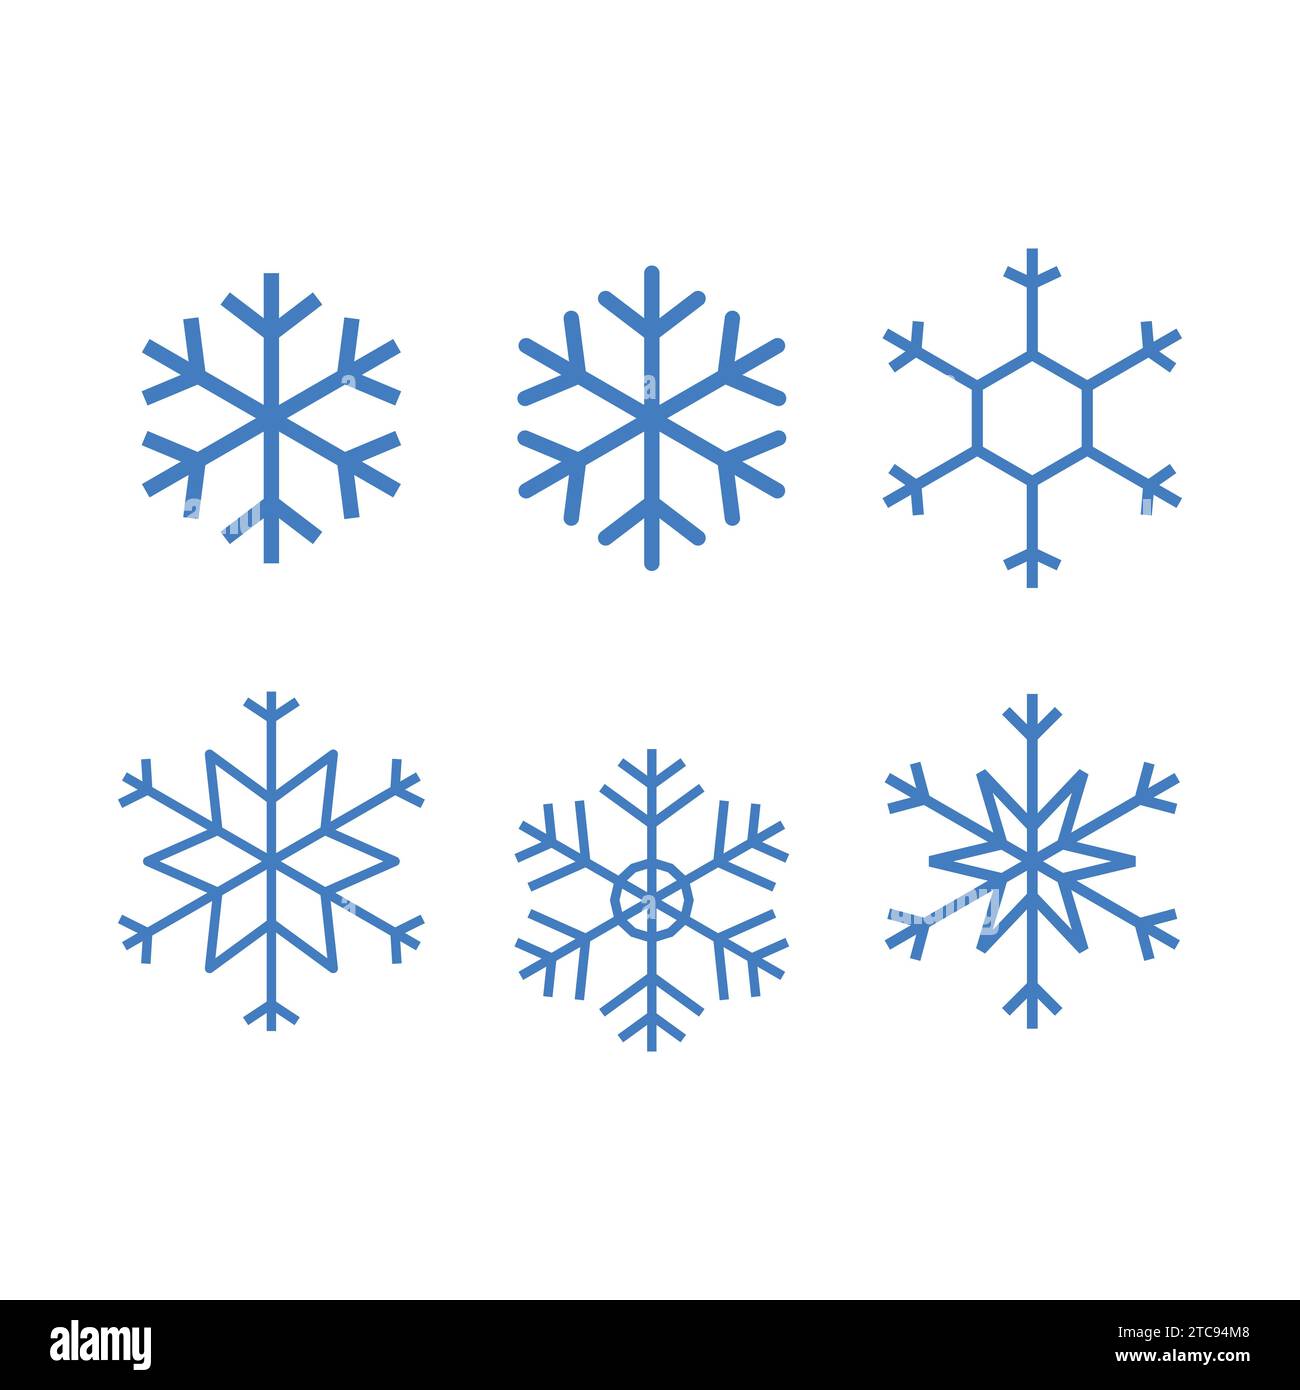 21 Snow flakes ideas  snowflakes, snow flake tattoo, frozen snowflake